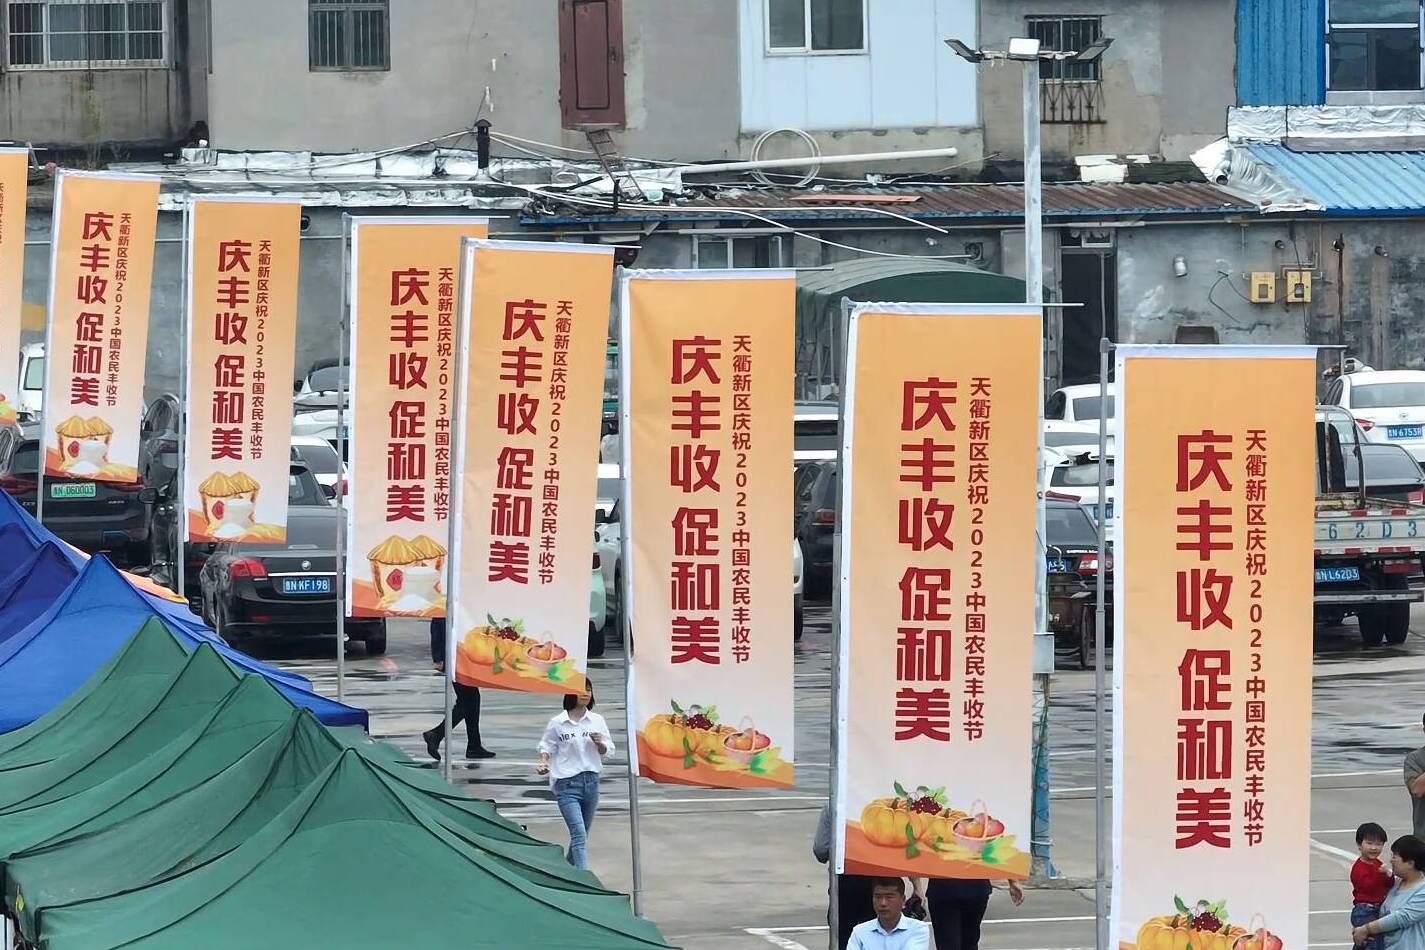 德州天衢新区庆祝中国农民丰收节活动举行 农产品区域公用品牌“首衢一指”发布